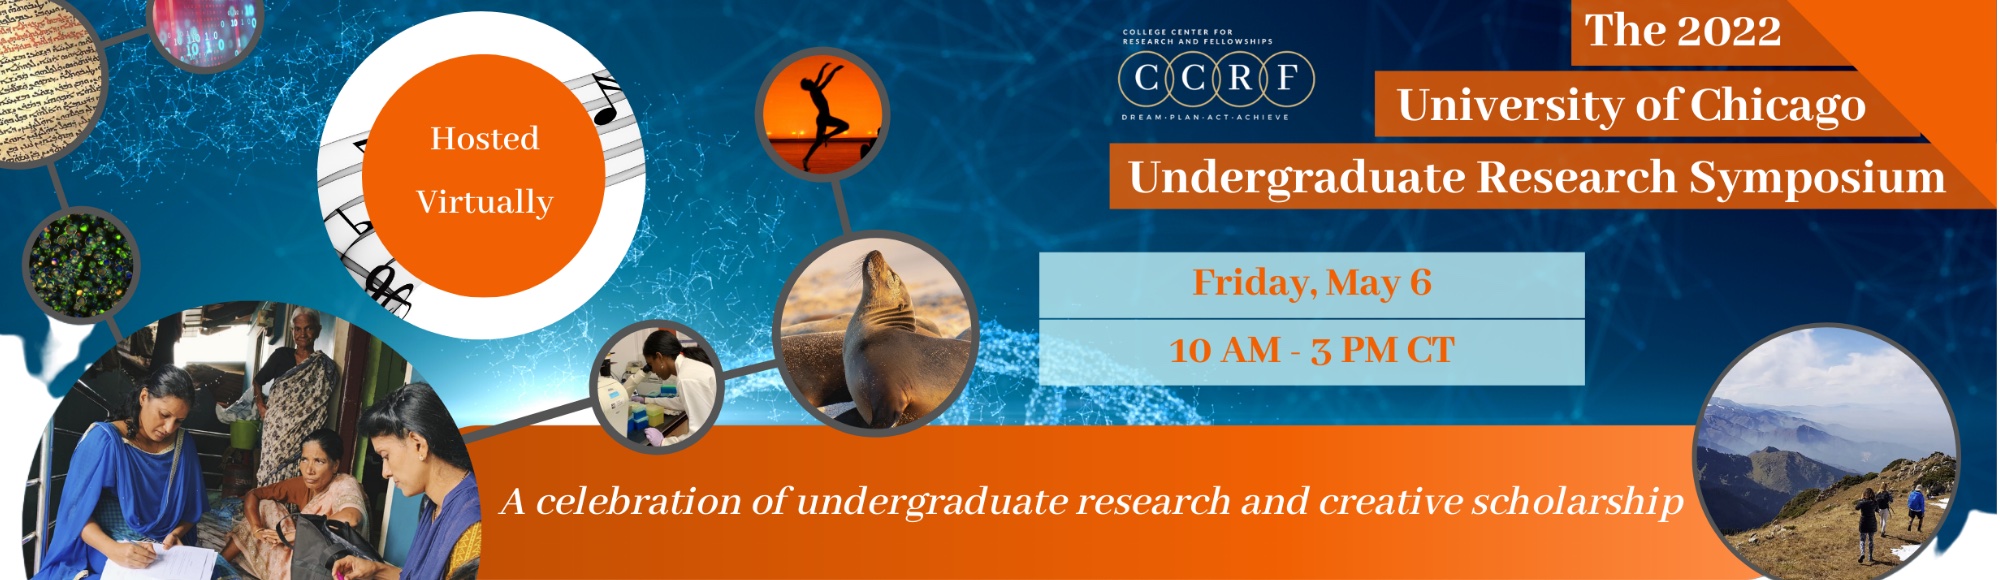 University of Chicago 2022 Undergraduate Research Symposium